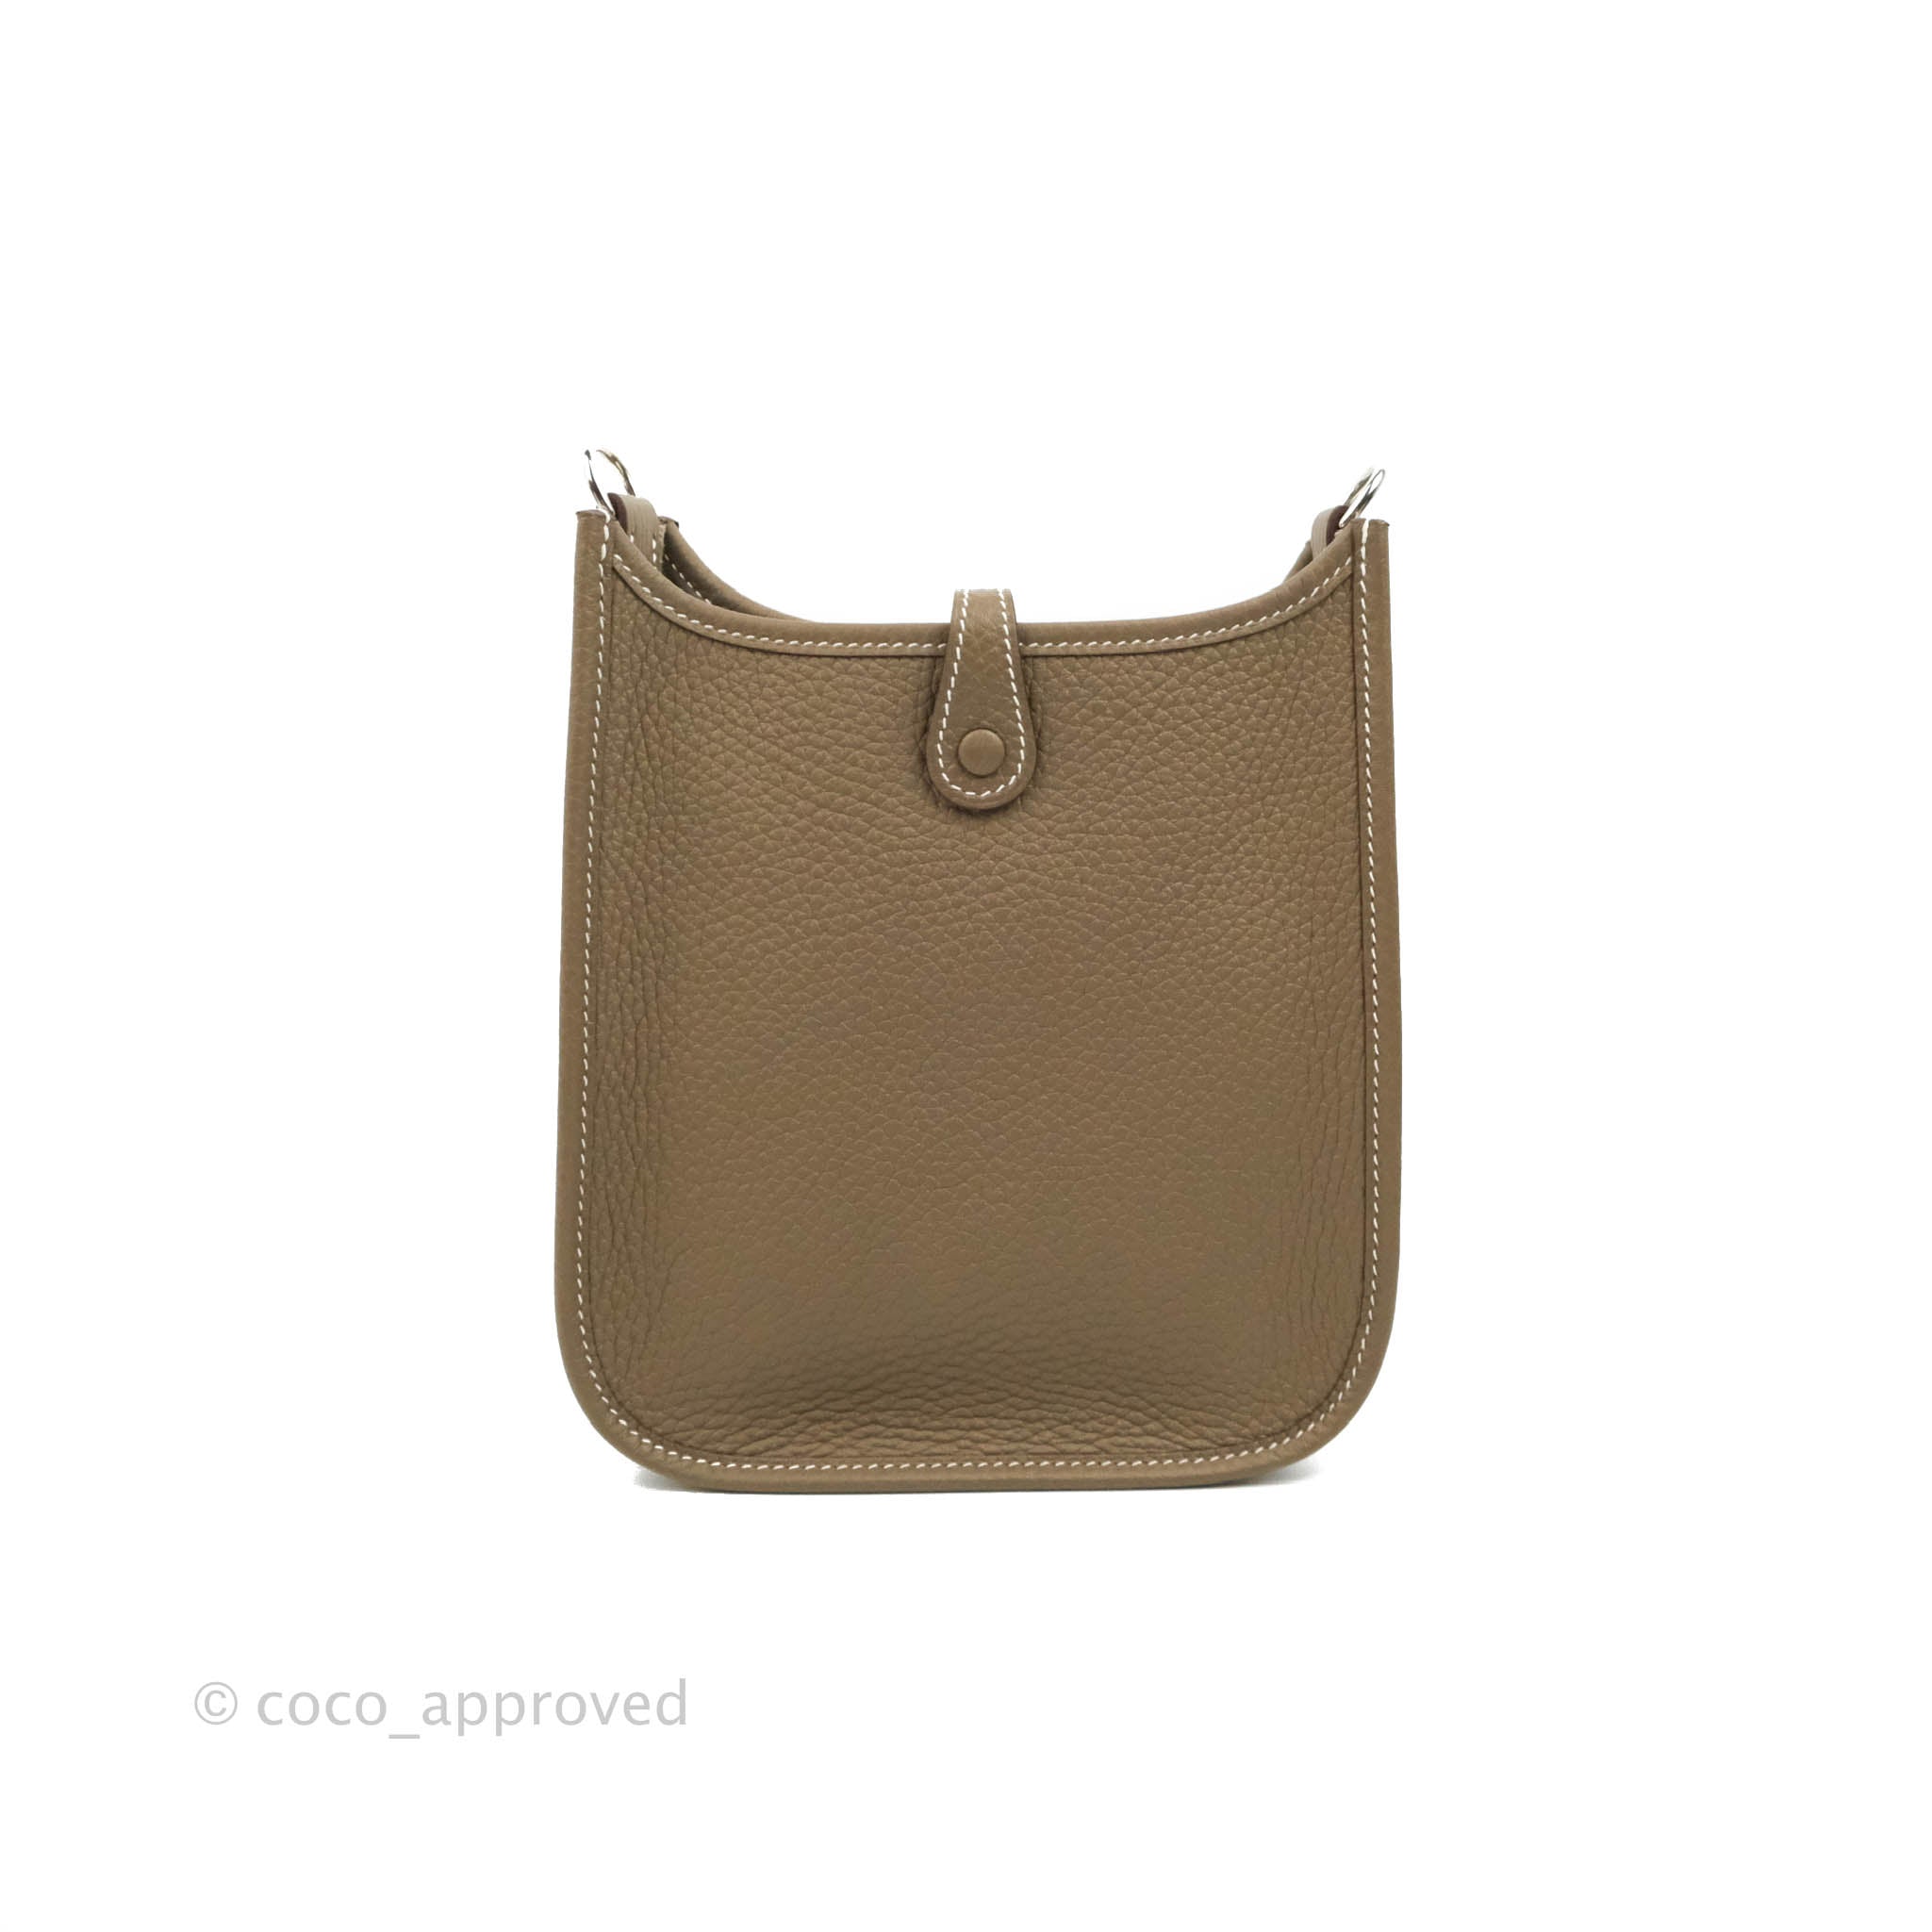 Hermes Evelyne 16 e Taurillon Clemence Bag | Hermes Bags